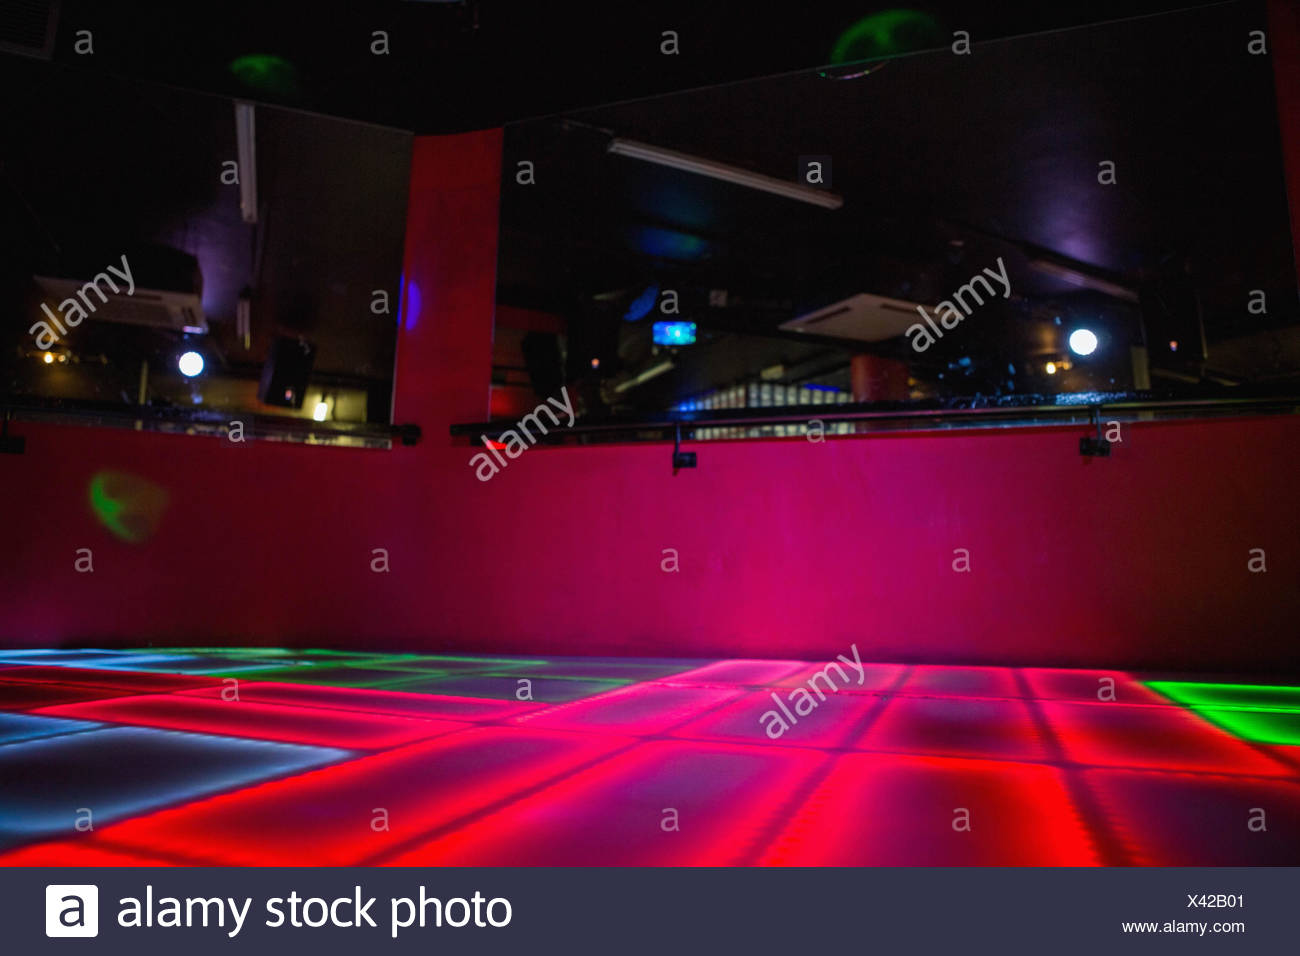 Disco Dance Floor Stock Photos & Disco Dance Floor Stock Images - Alamy